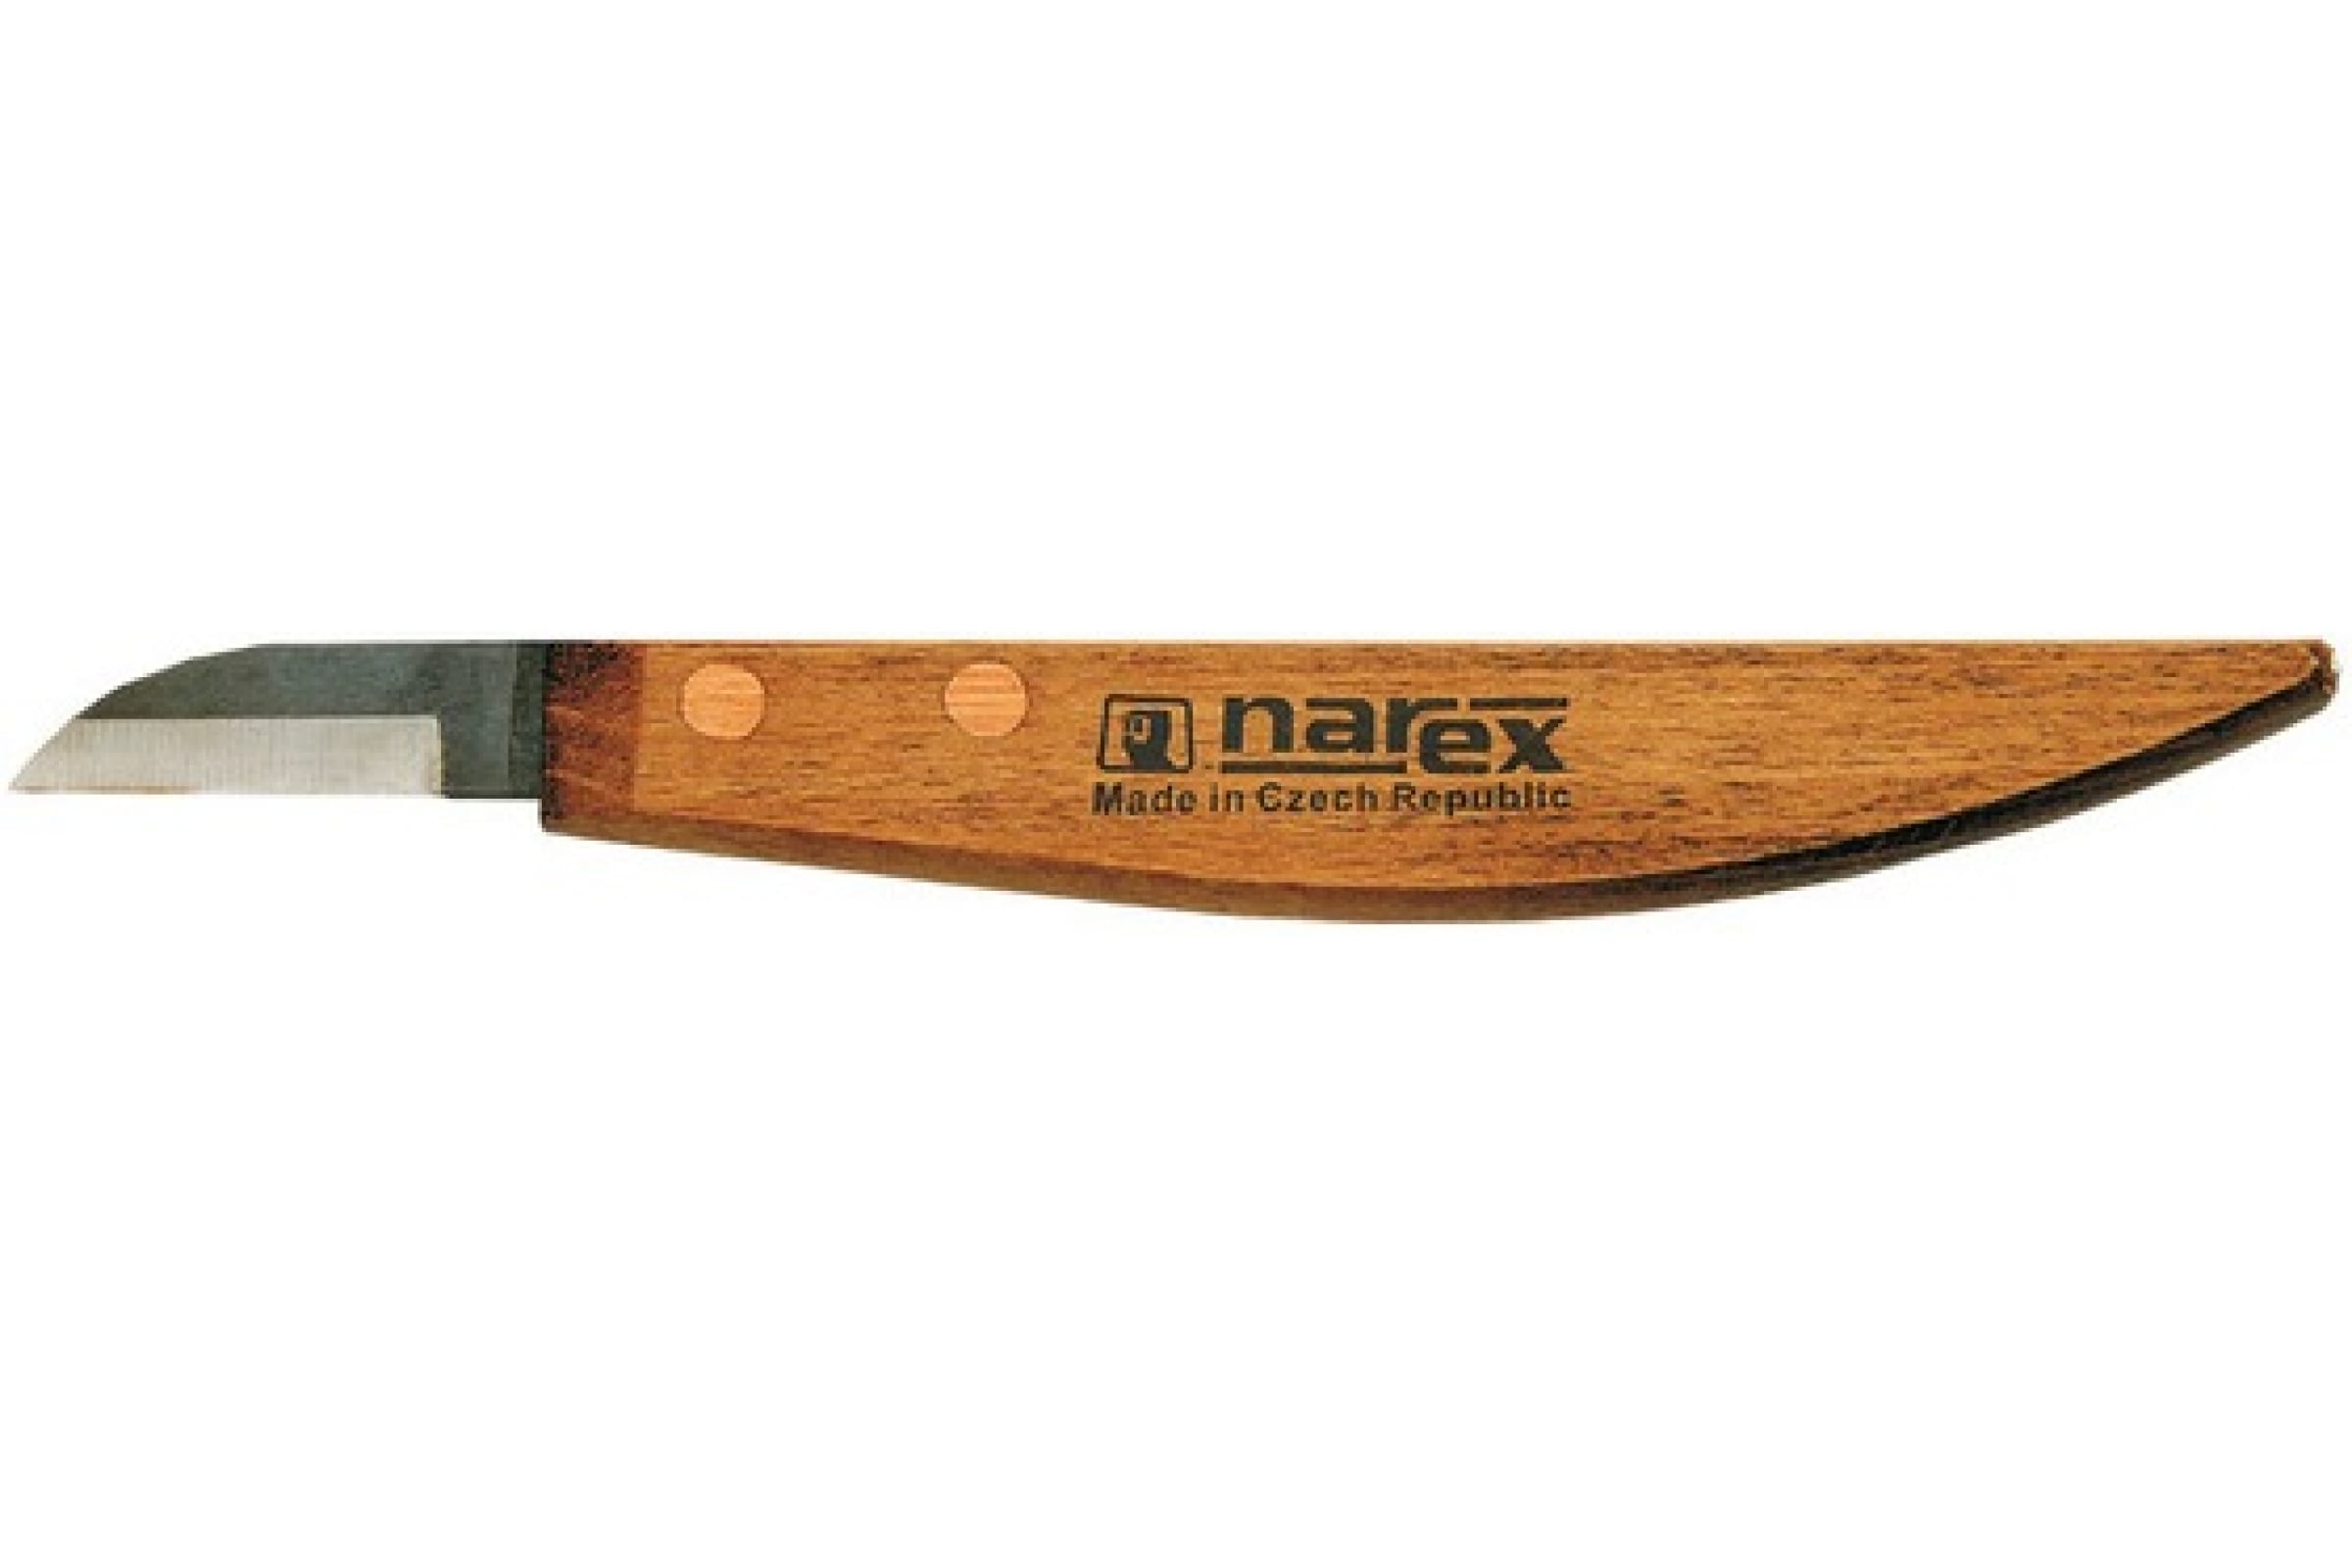 Набор из 4 ножей в деревянной коробке NAREX Profi 869100 - фото